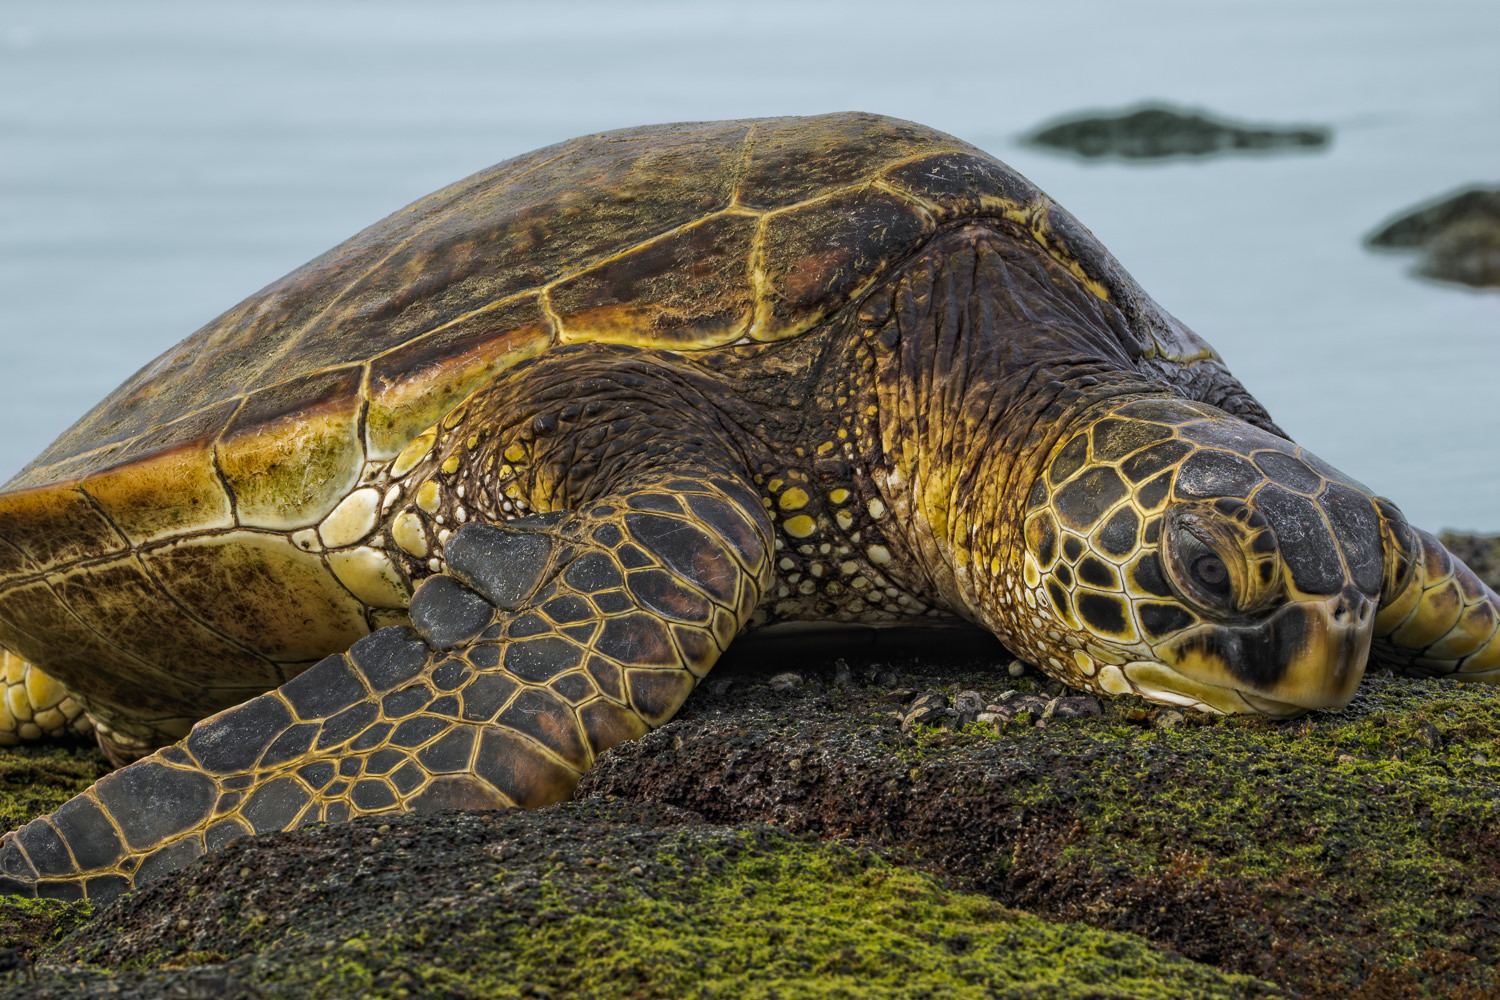 The Big Island of Hawaii Green Sea Turtle Sony a6000